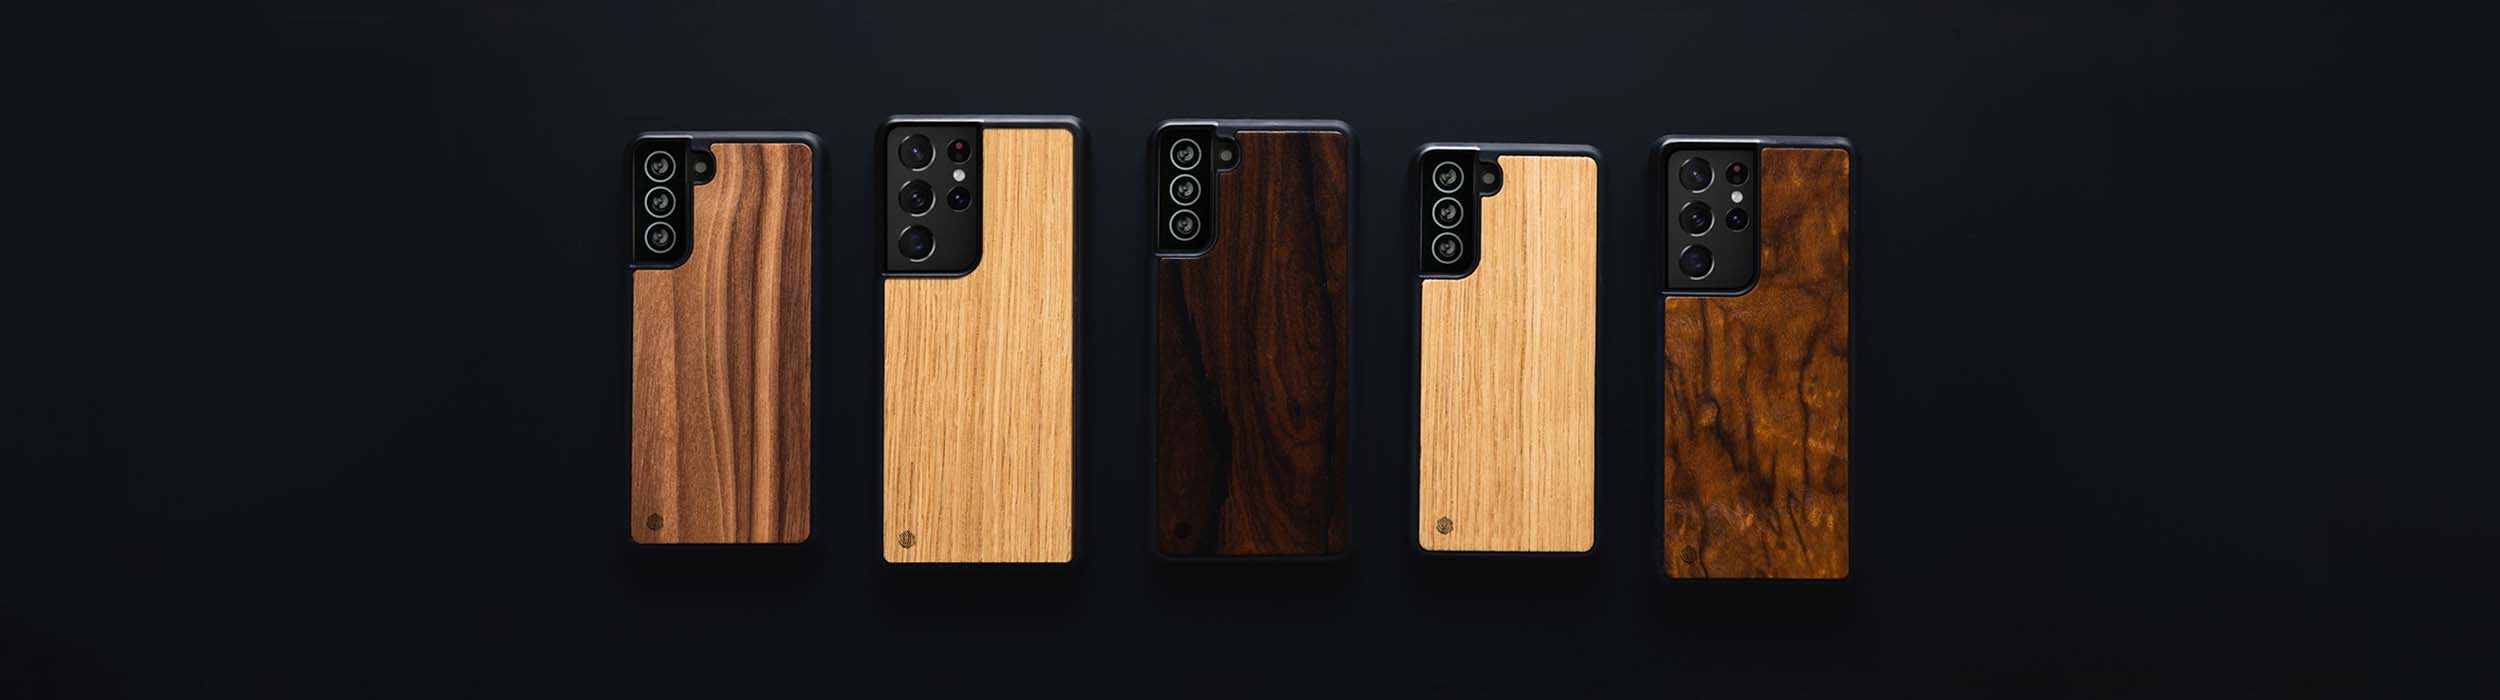 Samsung Galaxy S20 ULTRA Handyhüllen aus Holz